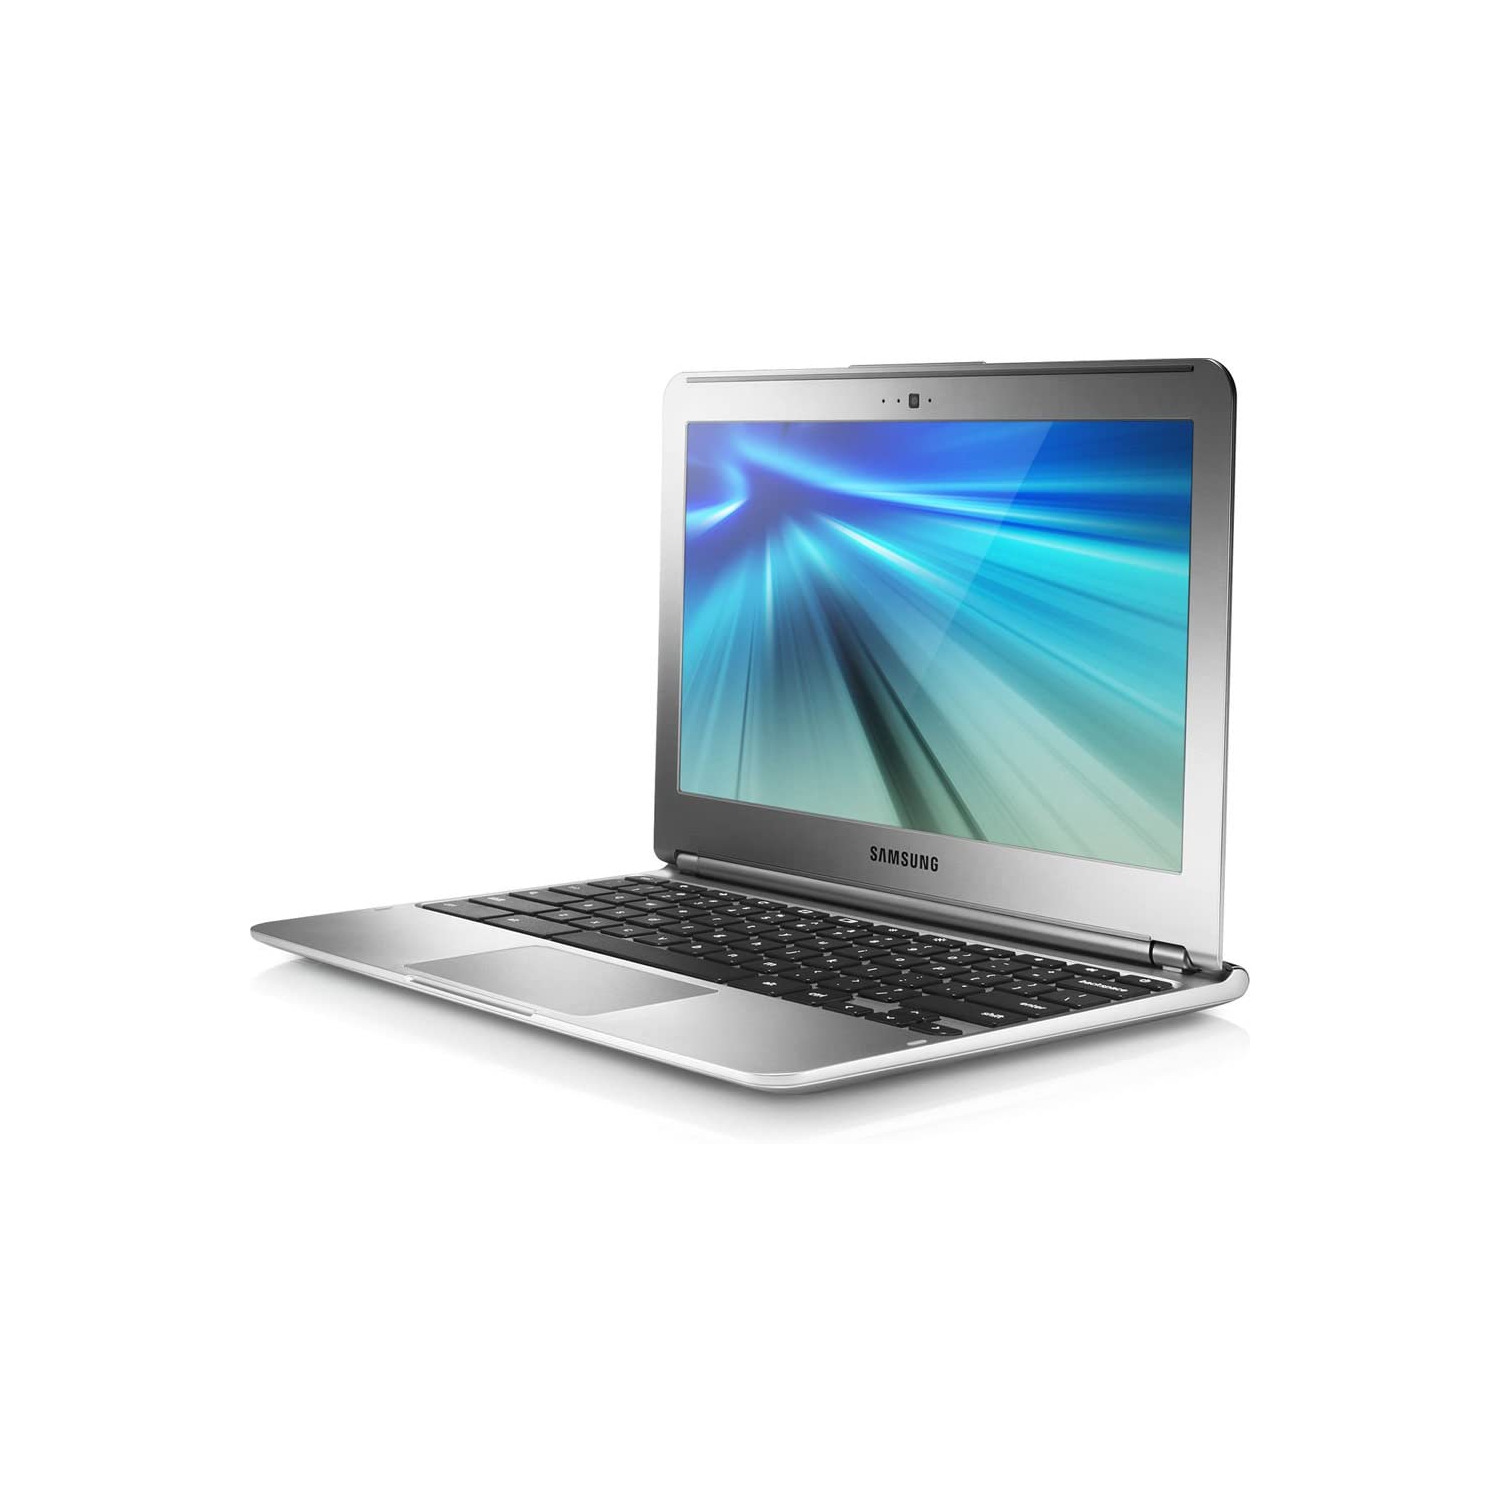 Refurbished (Good) - Samsung 11.6" Chromebook XE303C12 (Exynos 5 Dual Processor / 2GB RAM / 16GB SSD) - 1 Year Warranty - (Grade A)